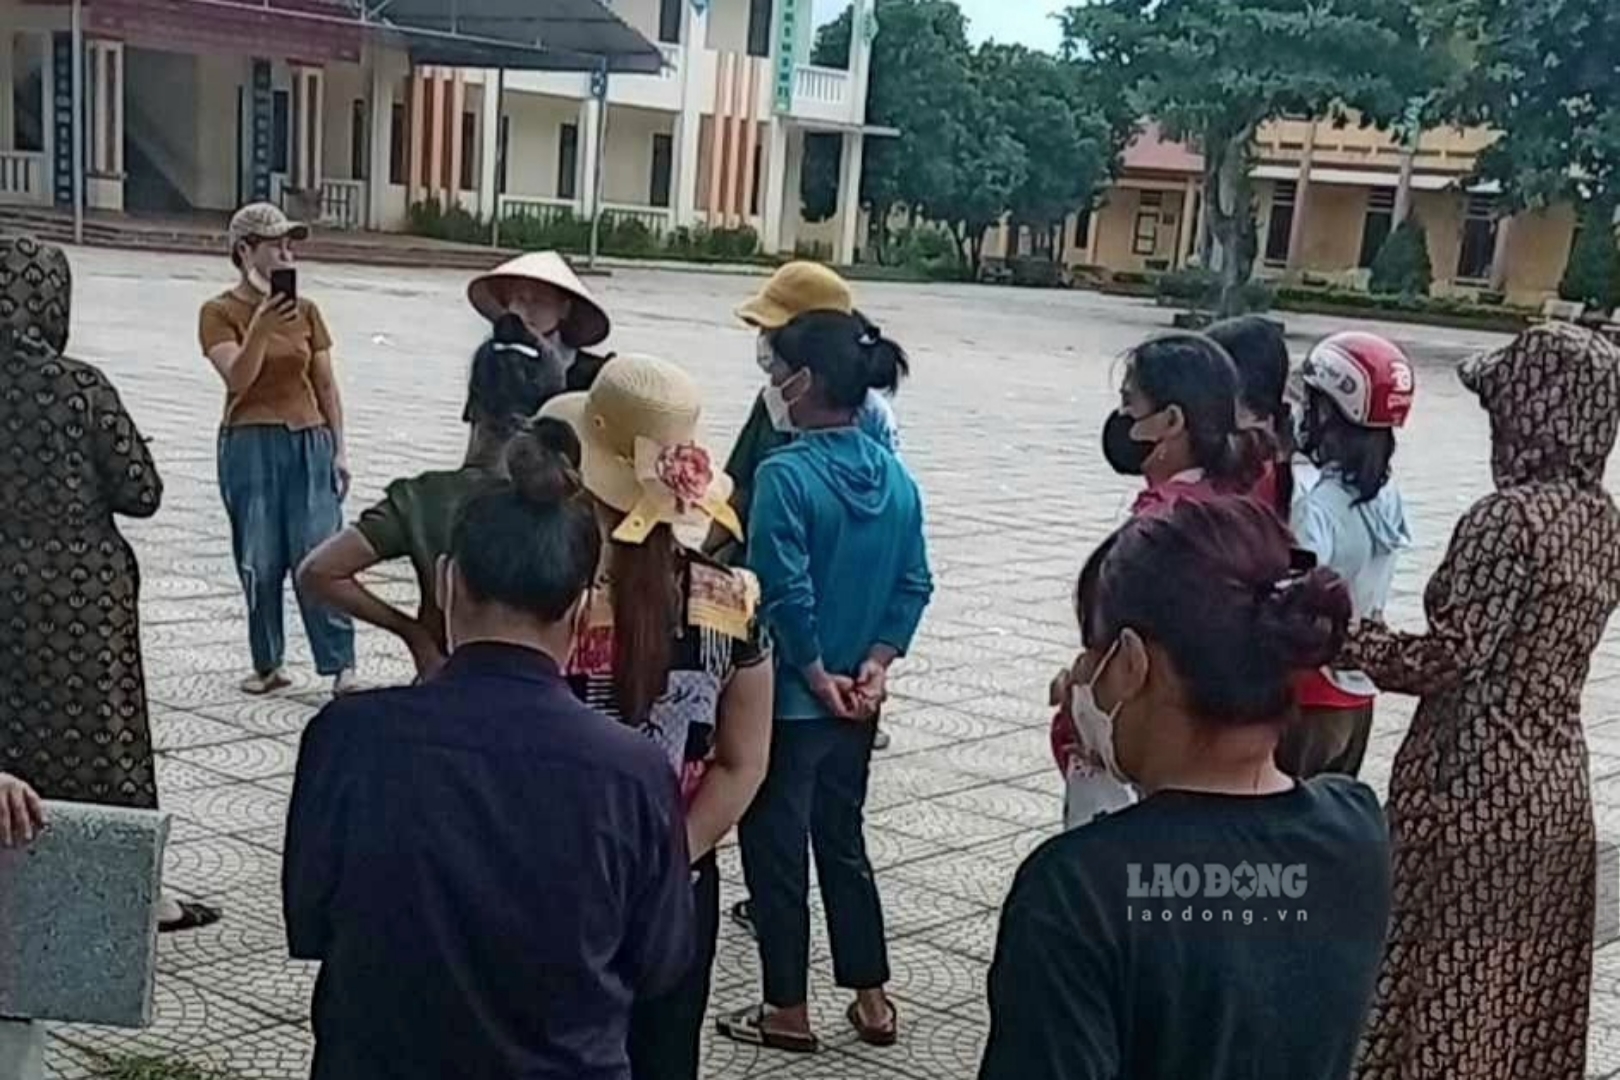 Ngày 26.7, các phụ huynh kéo vào sân trường tìm gặp Hiệu trưởng mong muốn được nghe lời giải thích từ người đứng đầu trường Tiểu học Văn Luông. Ảnh do người dân cung cấp.